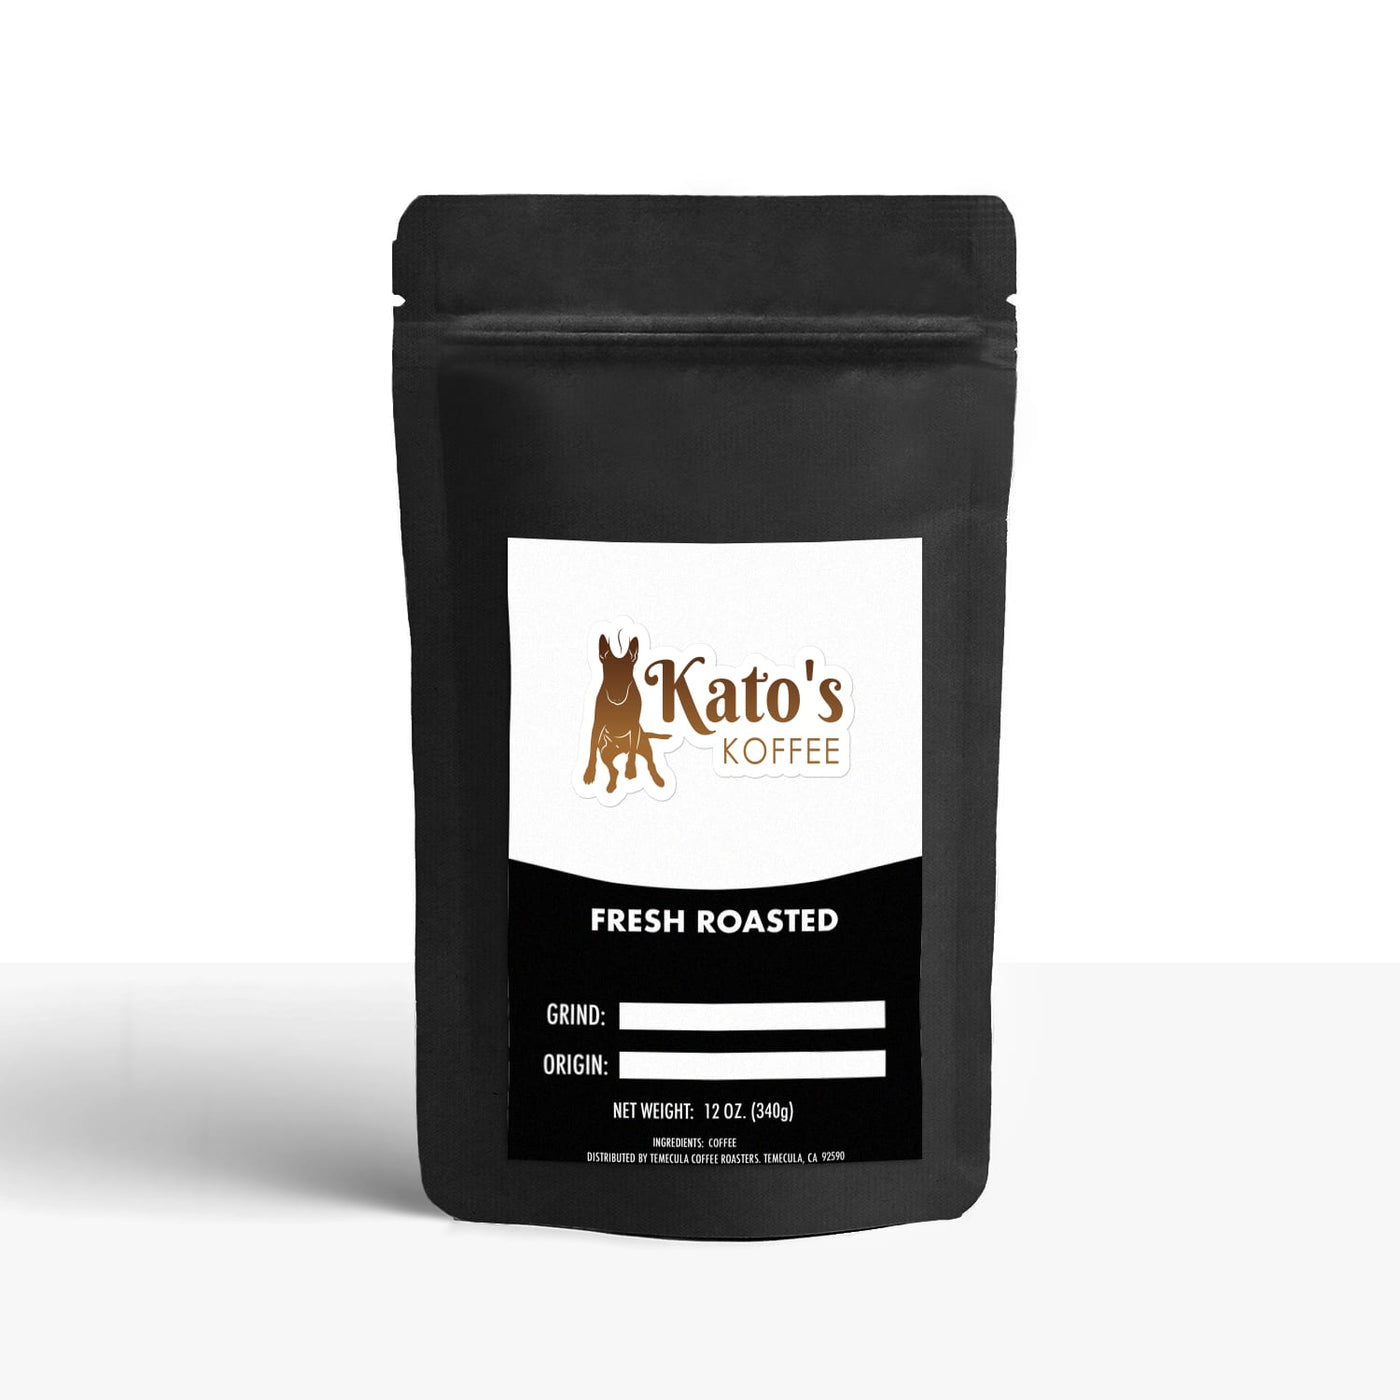 Peru - Kato's Koffee